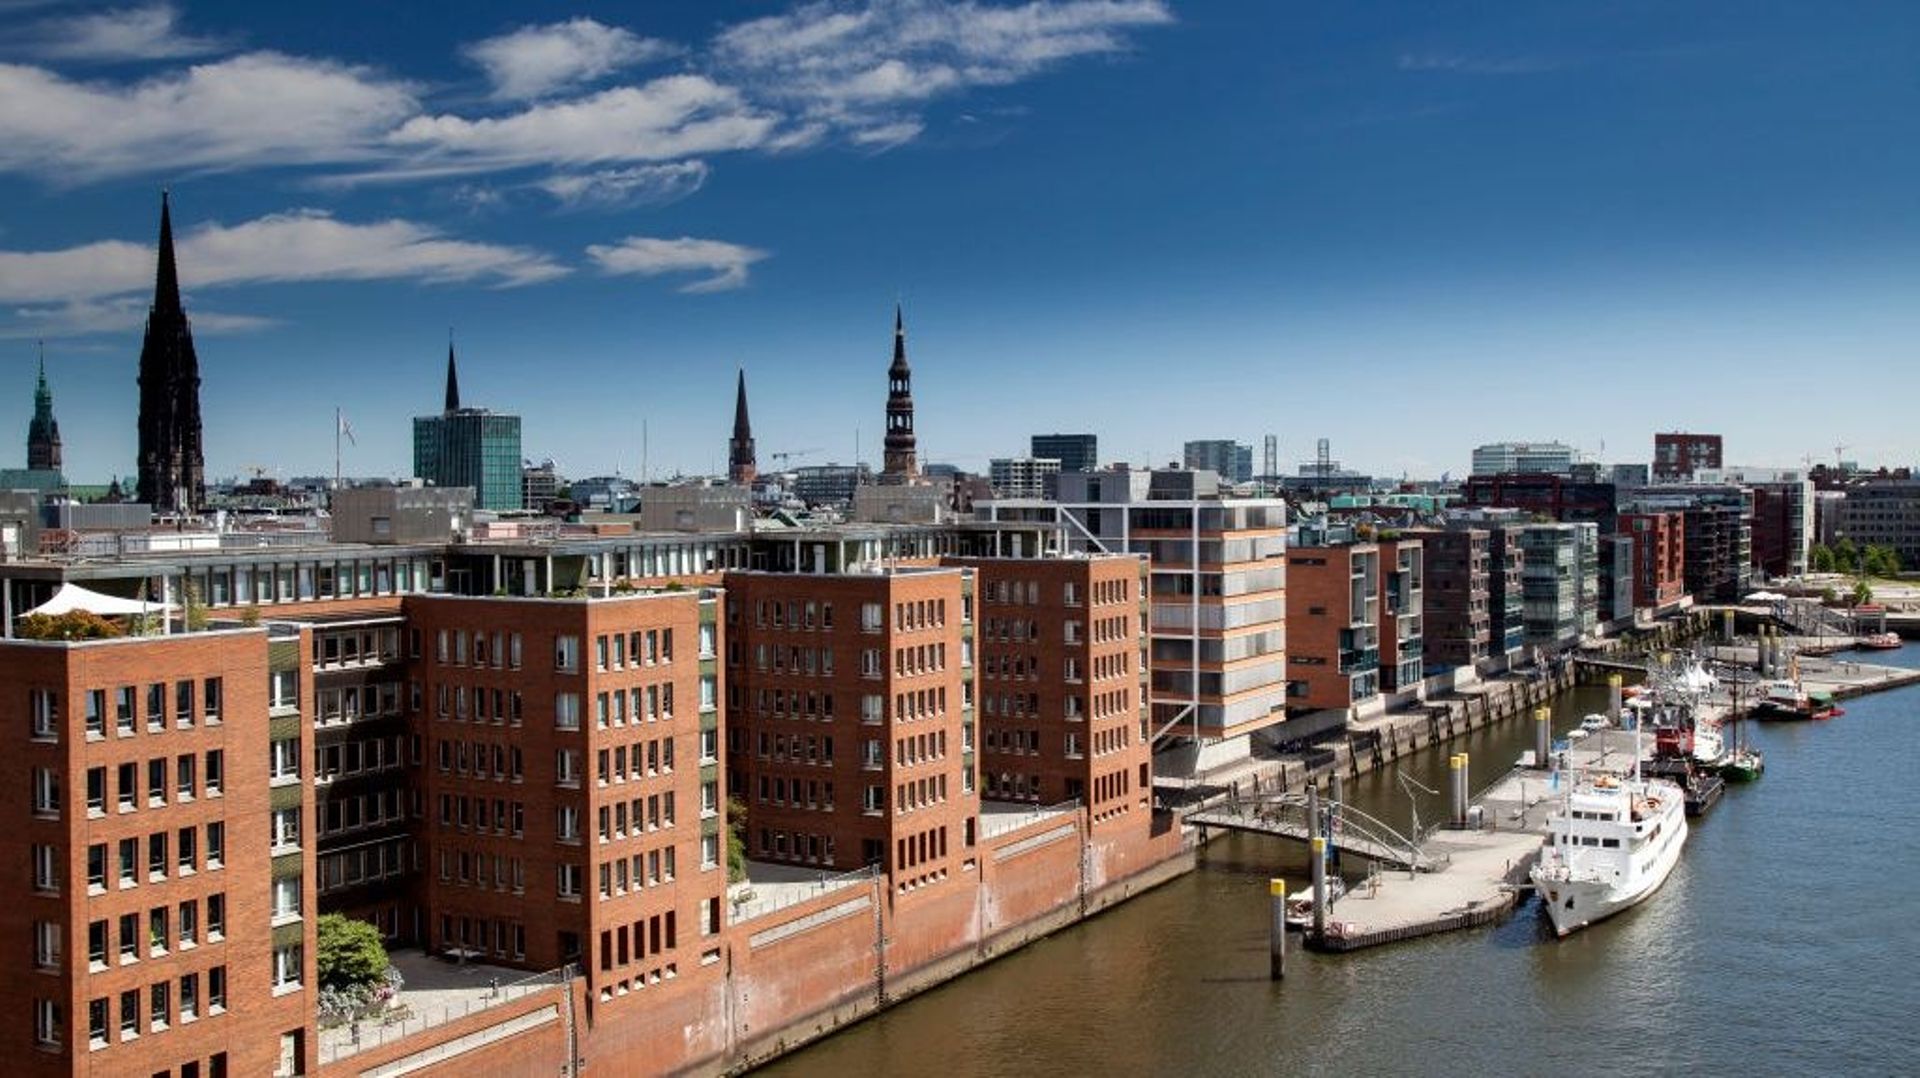 Les immeubles de la Speicherstadt à Hambourg, dans la HafenCity, un réaménagement urbain près du port qui s'adapte à la montée des eaux.